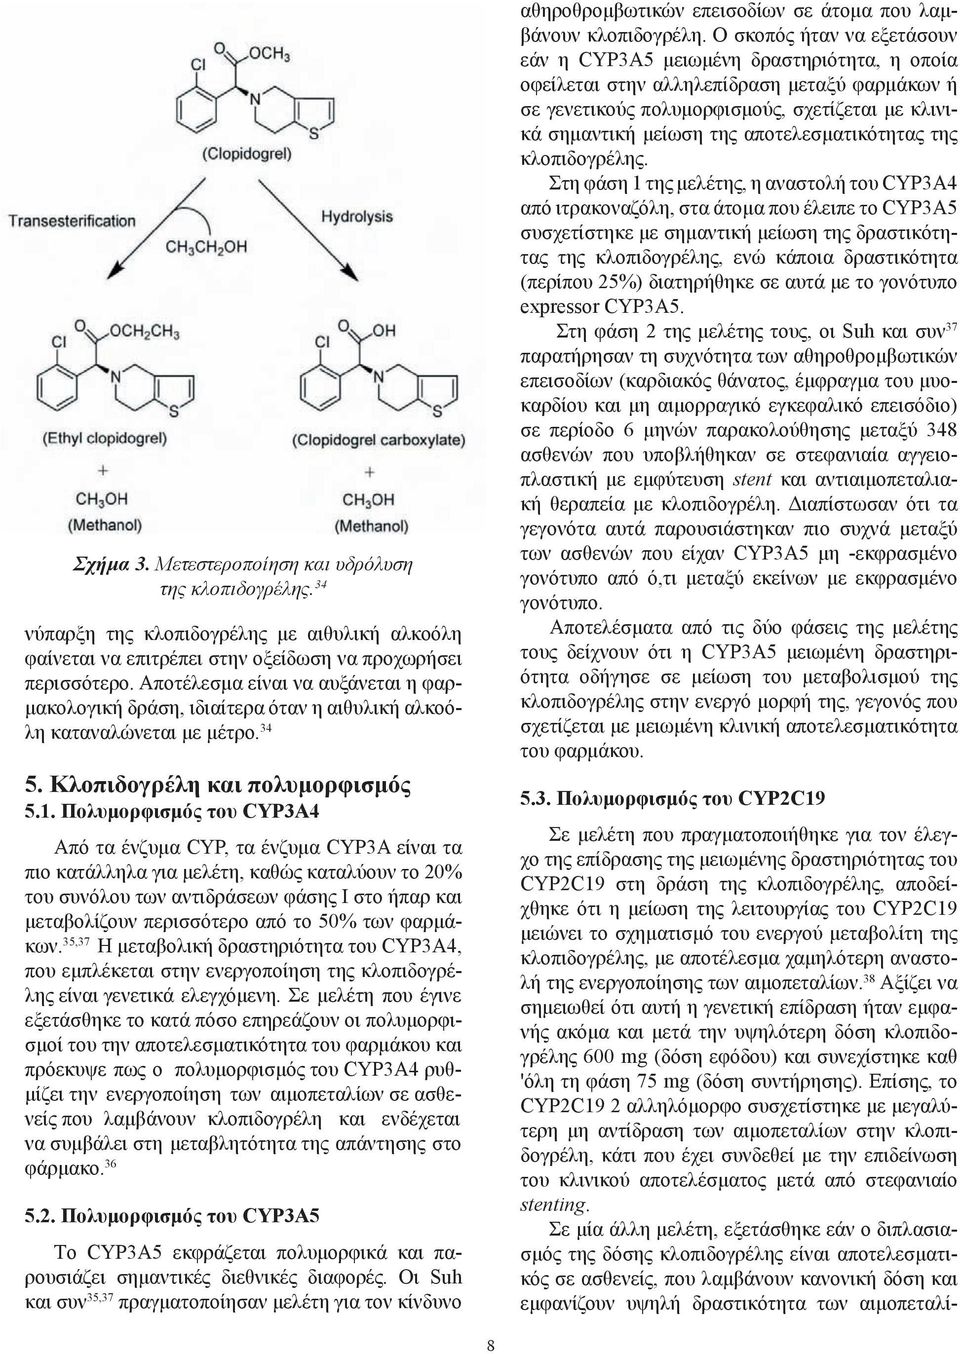 Πολυμορφισμός του CYP3A4 Από τα ένζυμα CYP, τα ένζυμα CYP3A είναι τα πιο κατάλληλα για μελέτη, καθώς καταλύουν το 20% του συνόλου των αντιδράσεων φάσης Ι στο ήπαρ και μεταβολίζουν περισσότερο από το